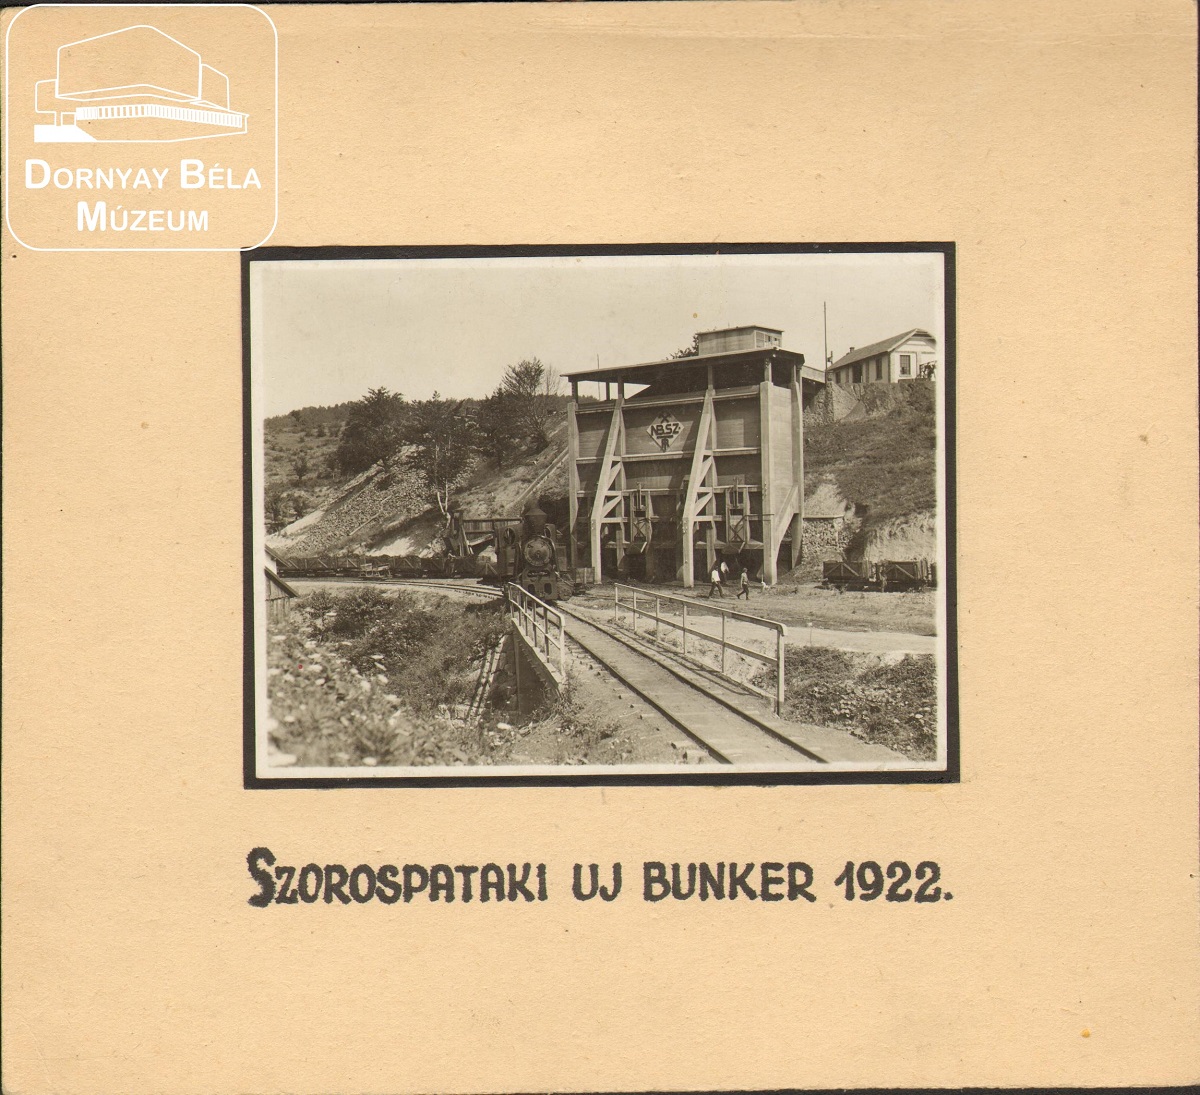 Szorospataki új bunker. (Dornyay Béla Múzeum, Salgótarján CC BY-NC-SA)